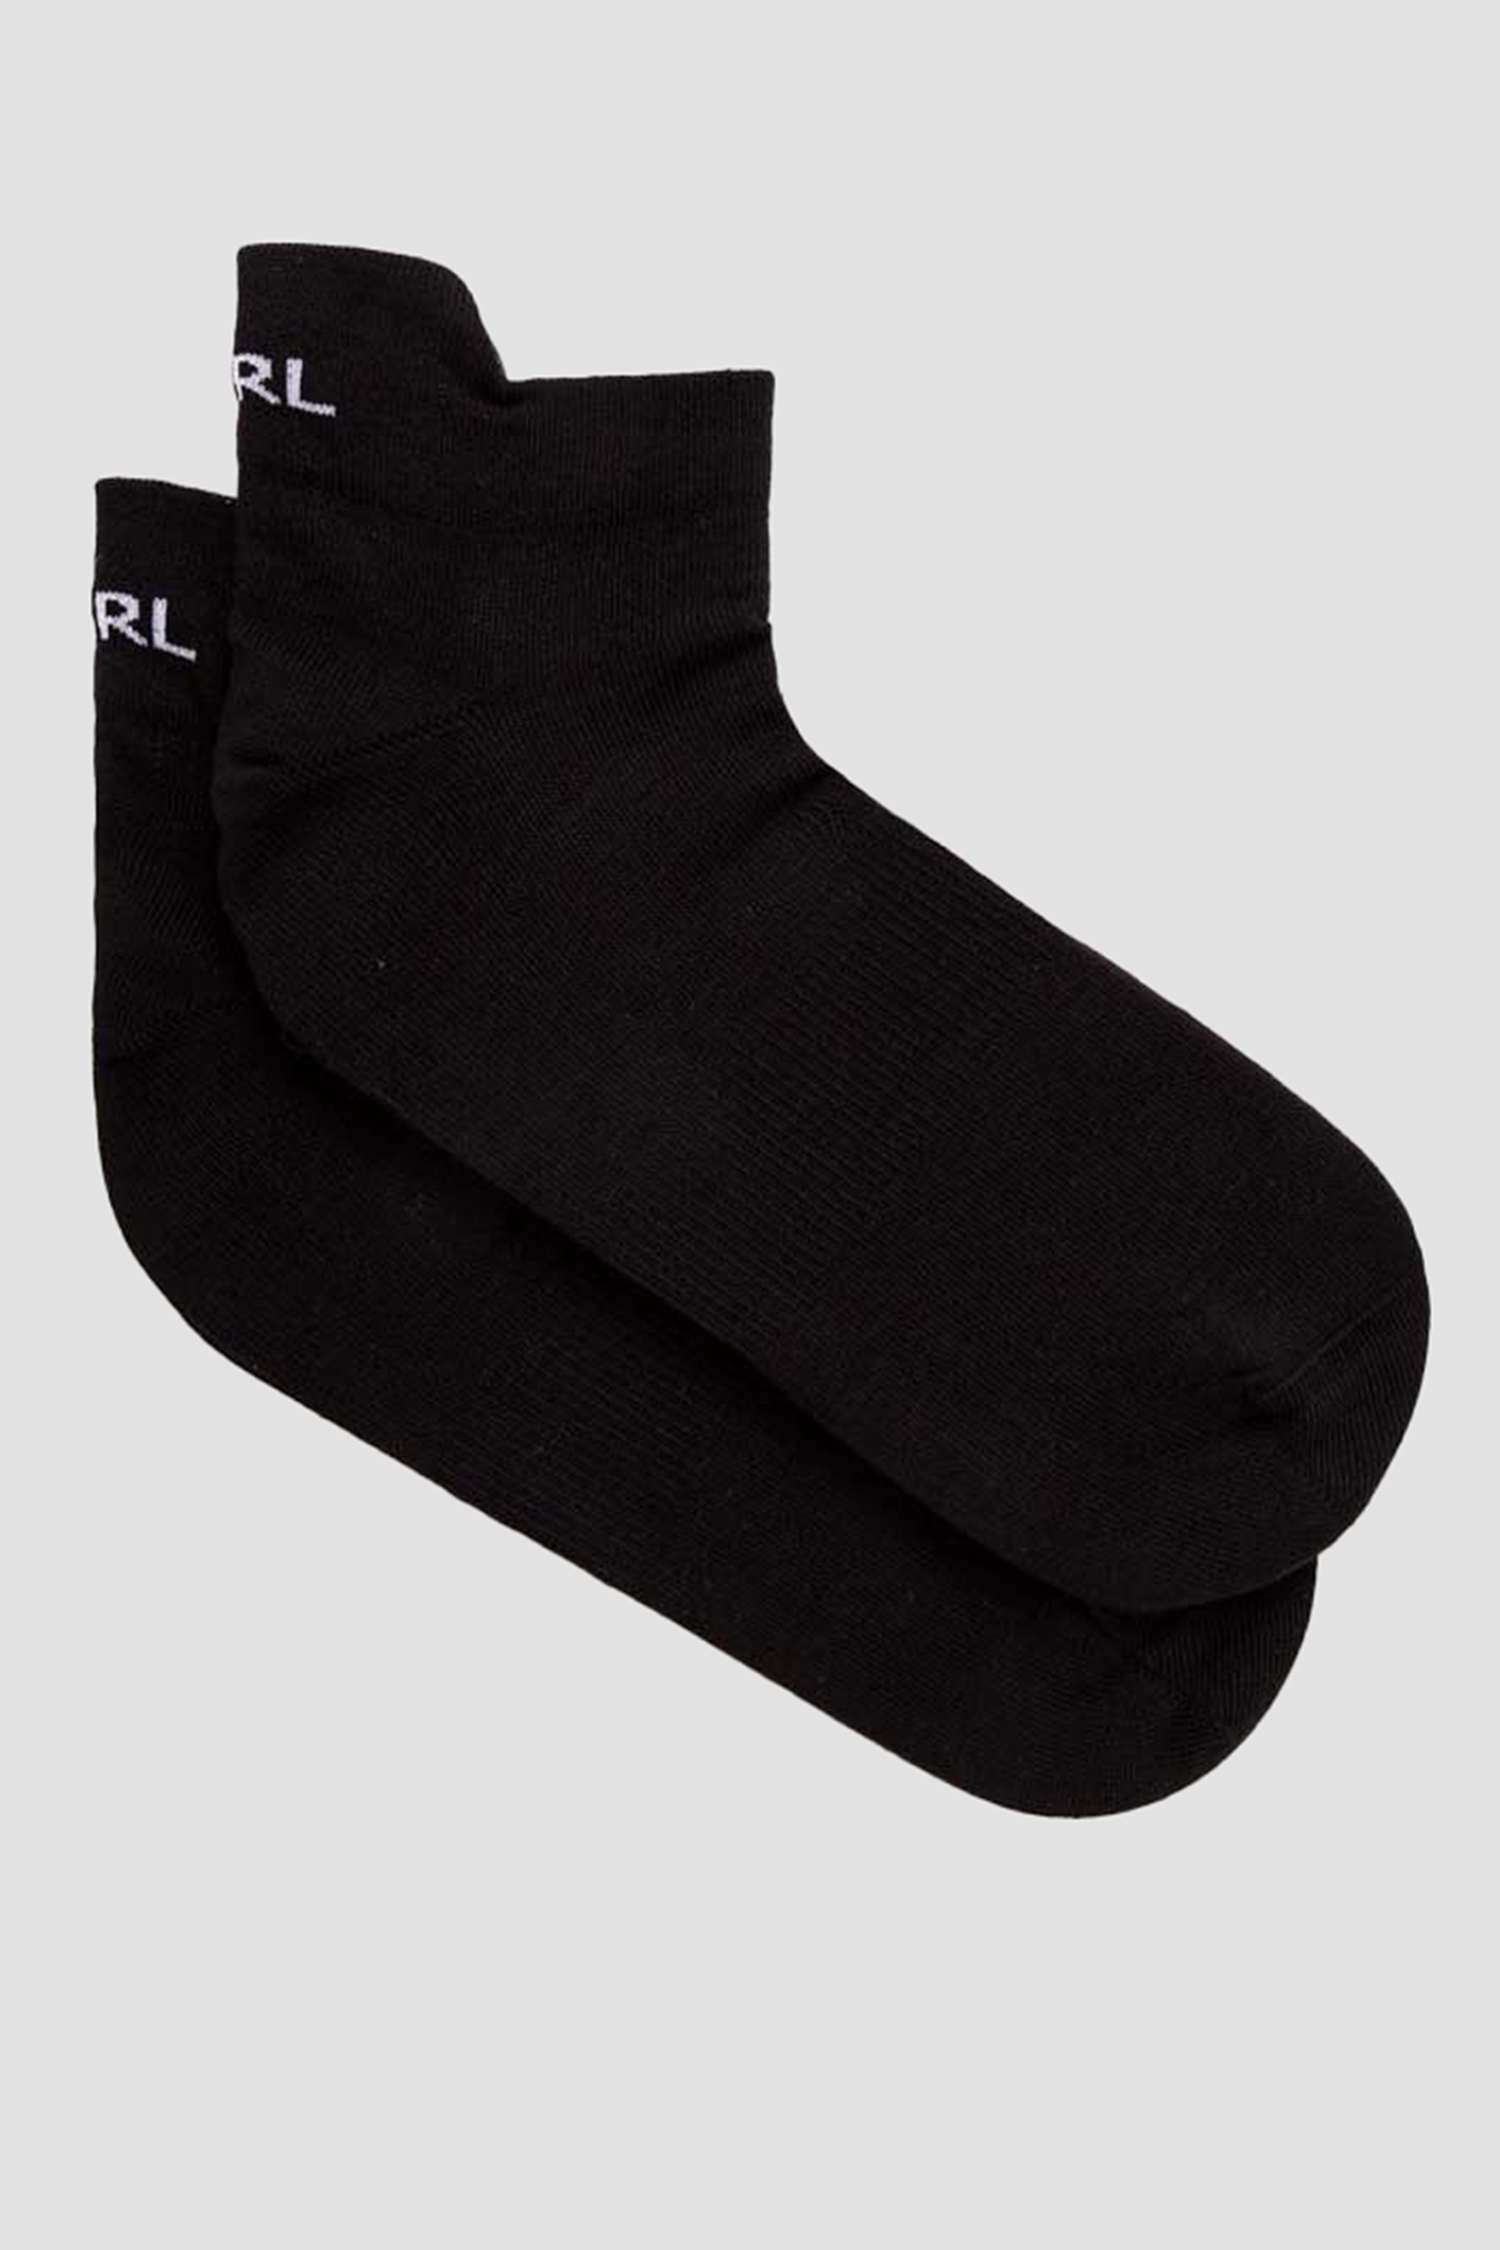 Чоловічі чорні шкарпетки Karl Lagerfeld 542102.805515;990